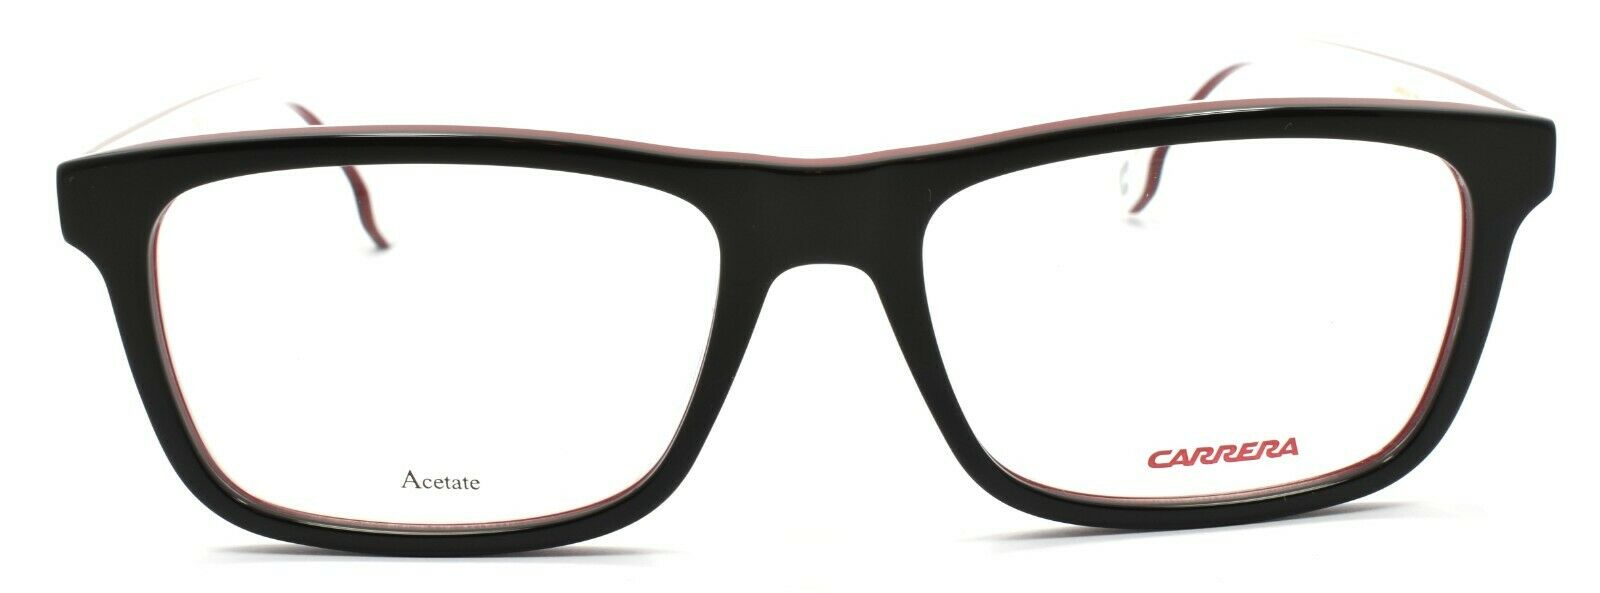 2-Carrera 1106/V 807 Men's Eyeglasses Frames 53-17-145 Black + CASE-762753112194-IKSpecs